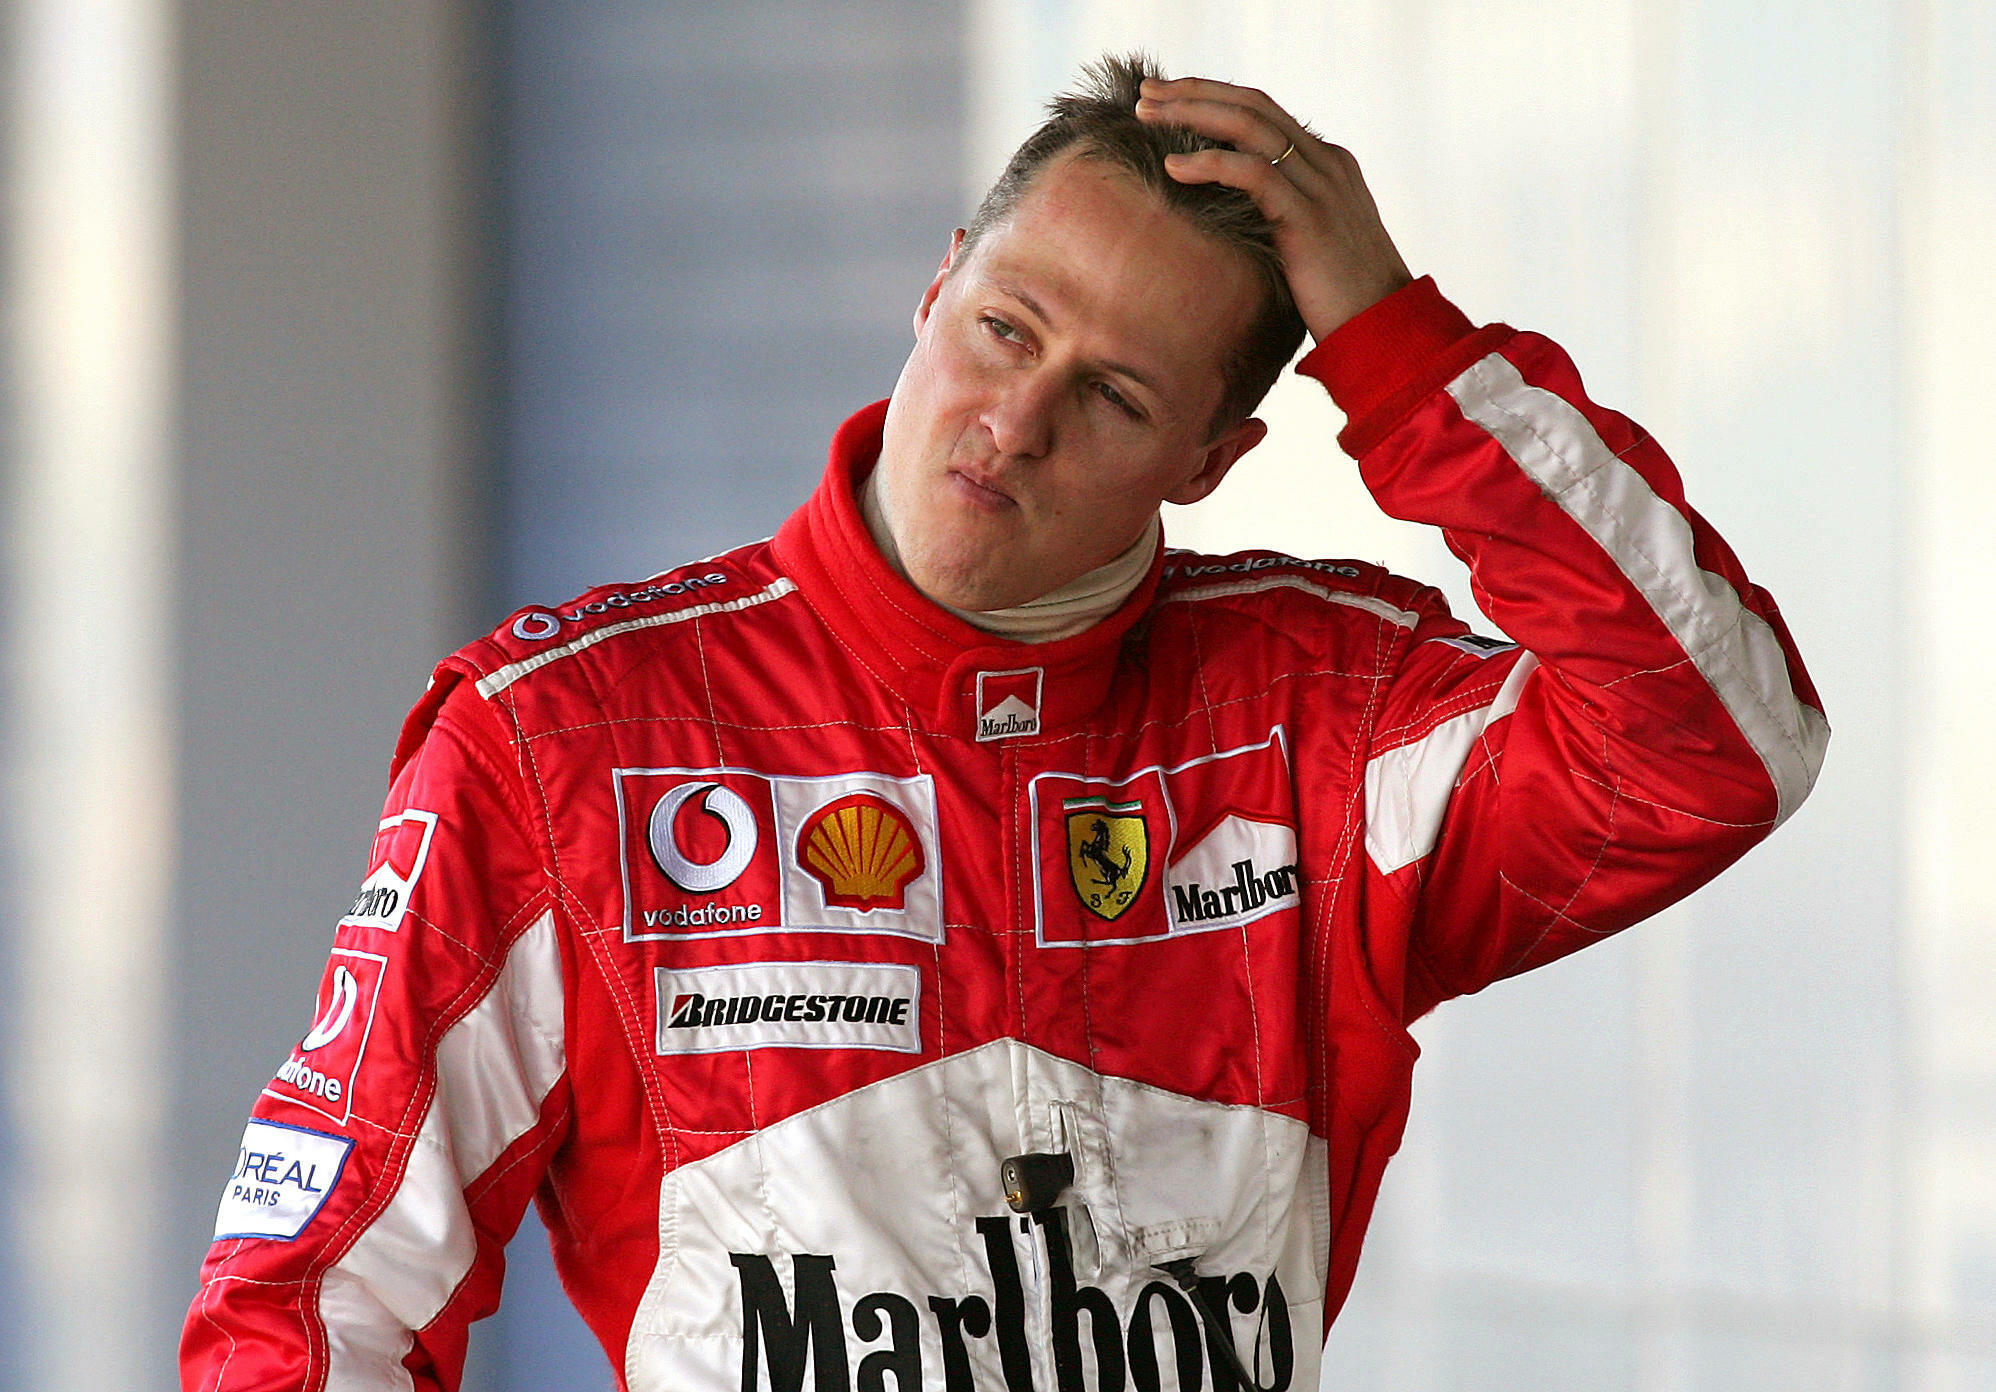 Plusieurs montres de l'ancien pilote Michael Schumacher ont été vendues, ce mardi à Genève. Icon sport